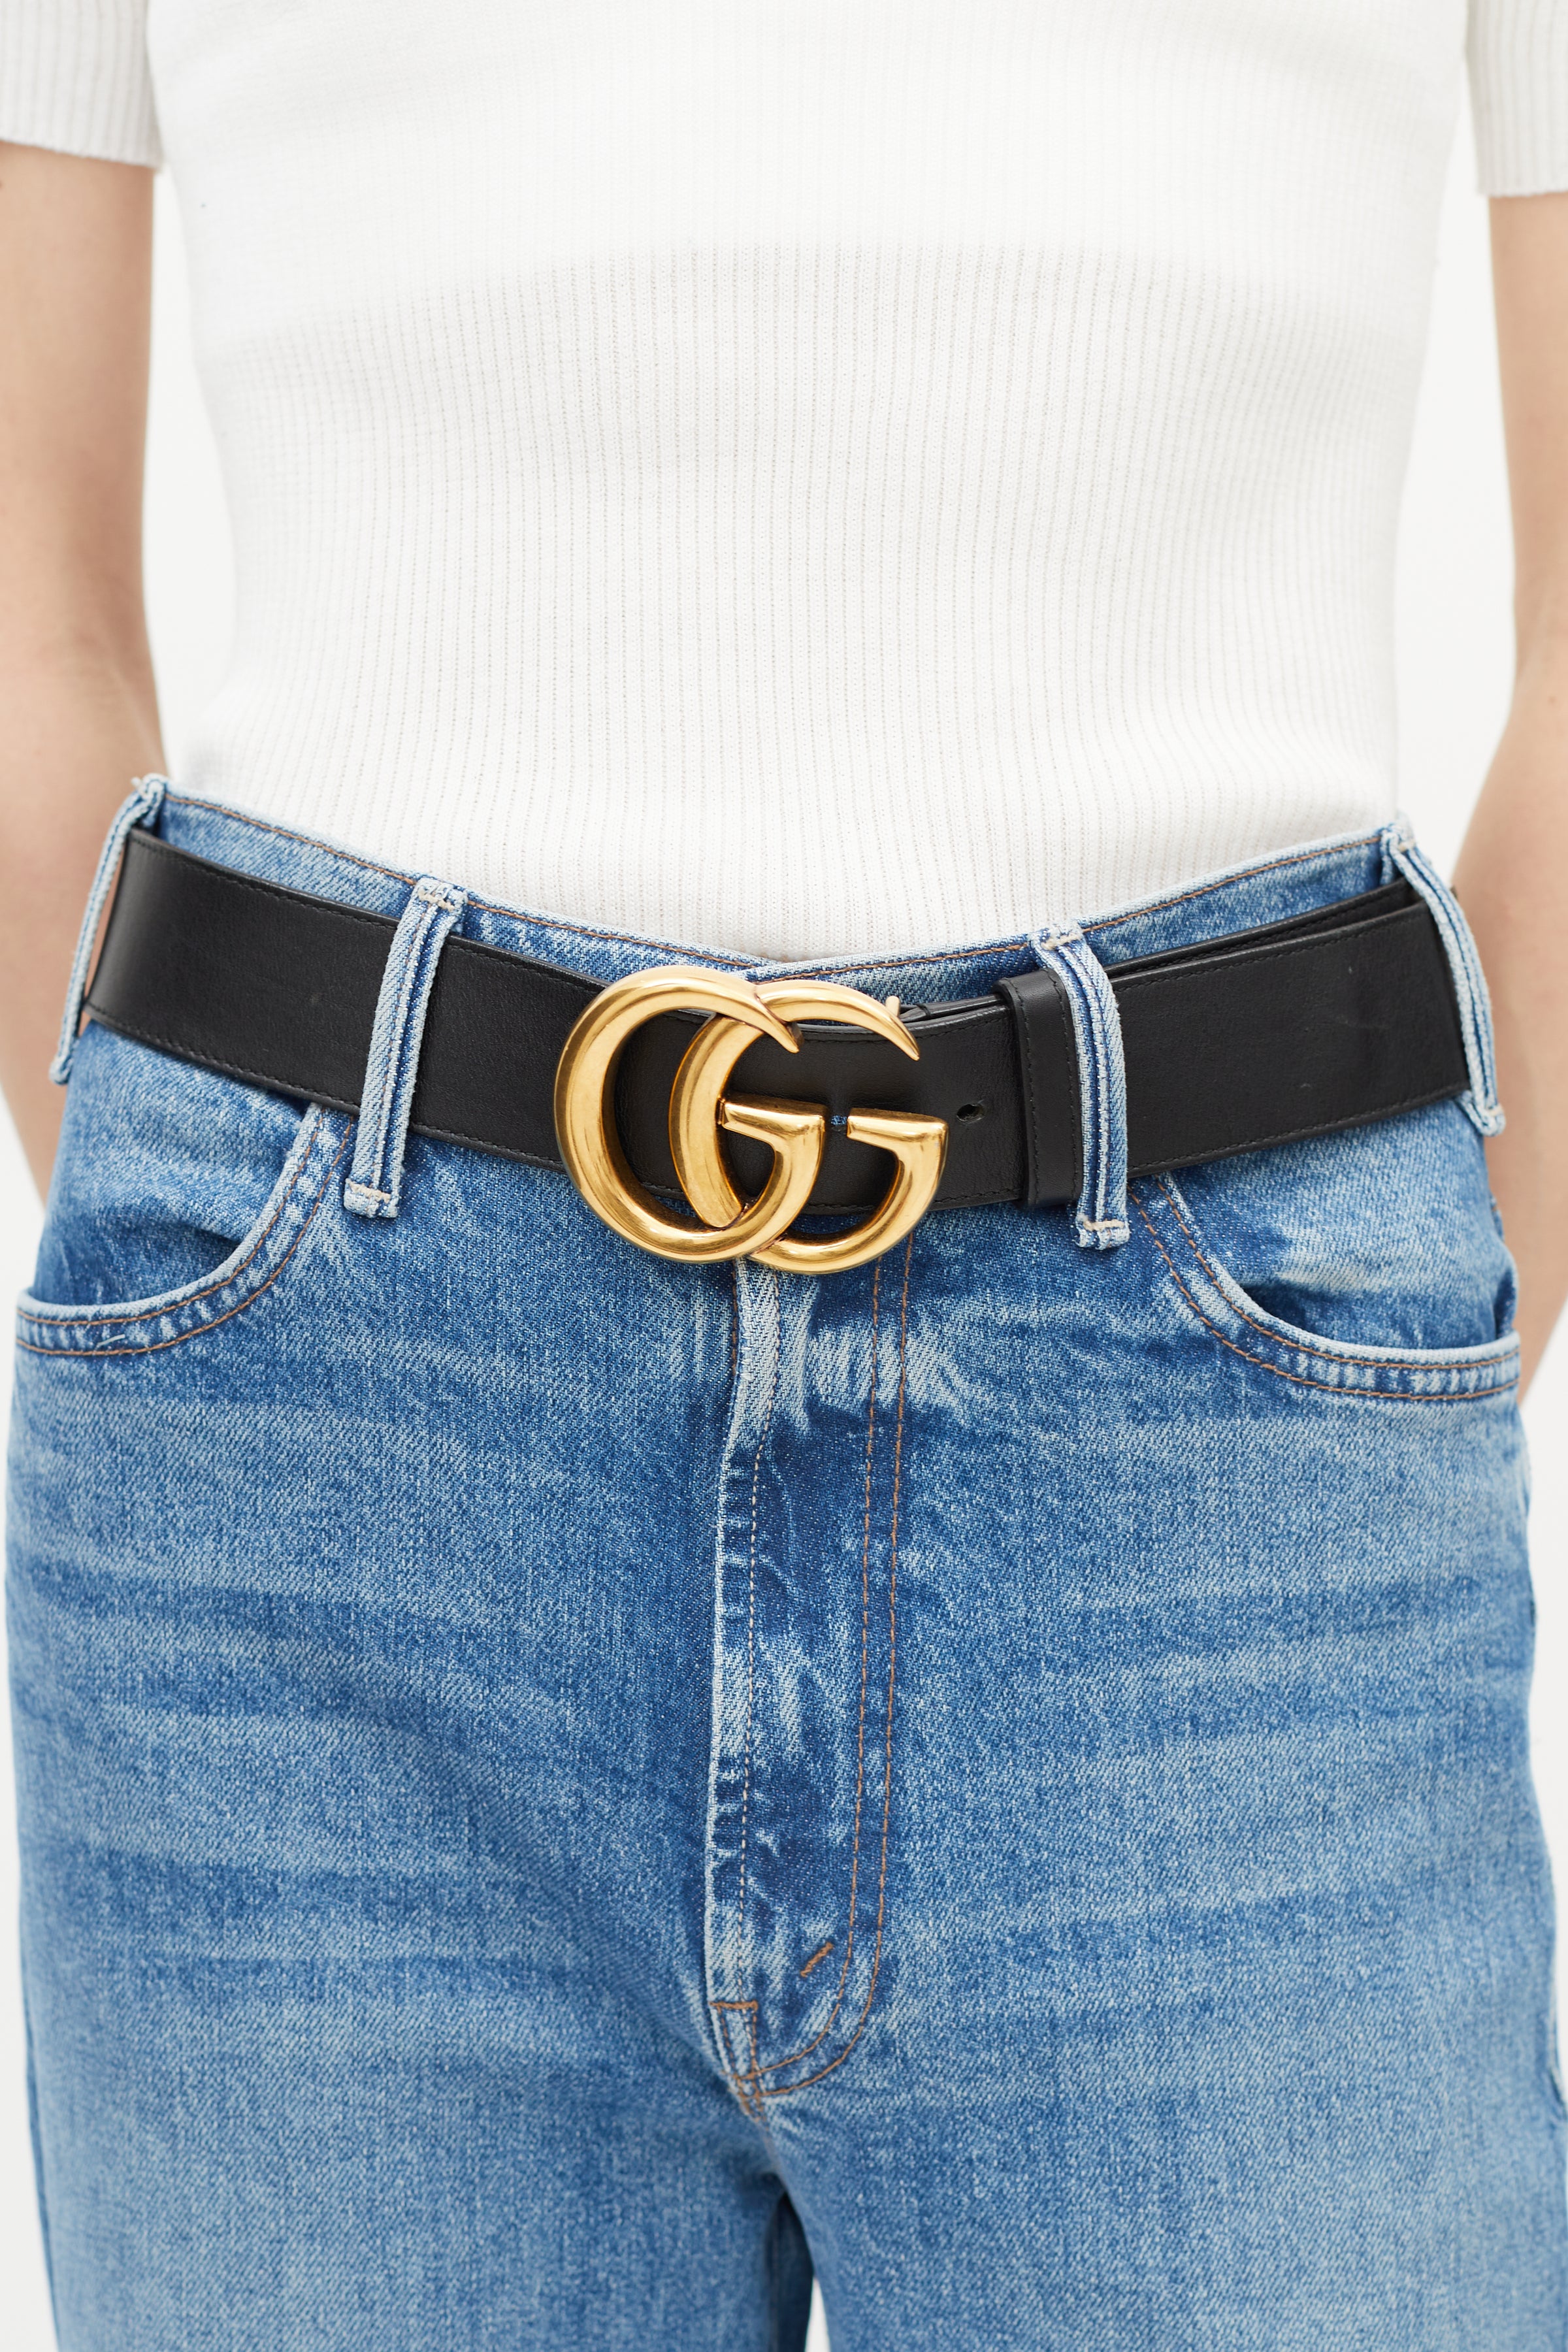 Gucci Womens Pants Coated denim &Studs black gold sz 27